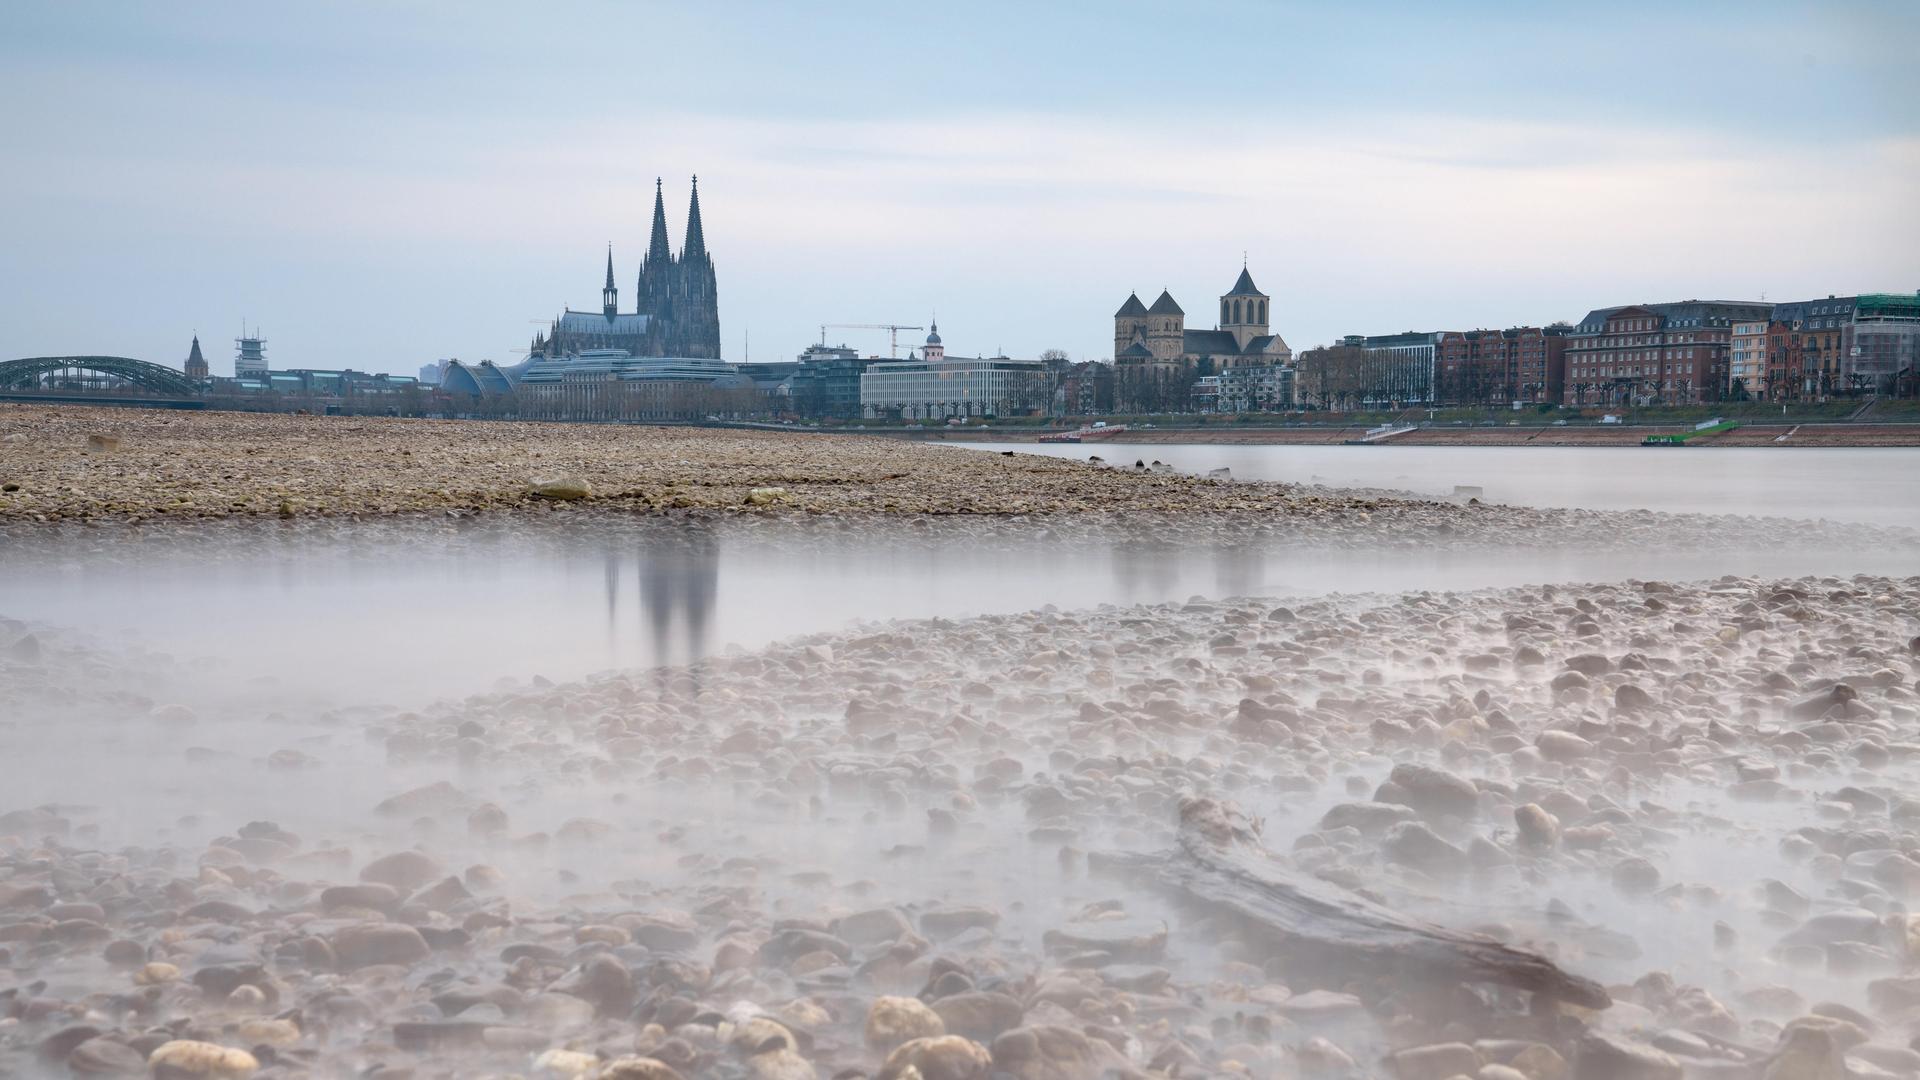 Niedrigwasser durch Dürre im Rhein bei Köln. Im Hintergrund ist leicht unscharf der Kölner Dom zu sehen.